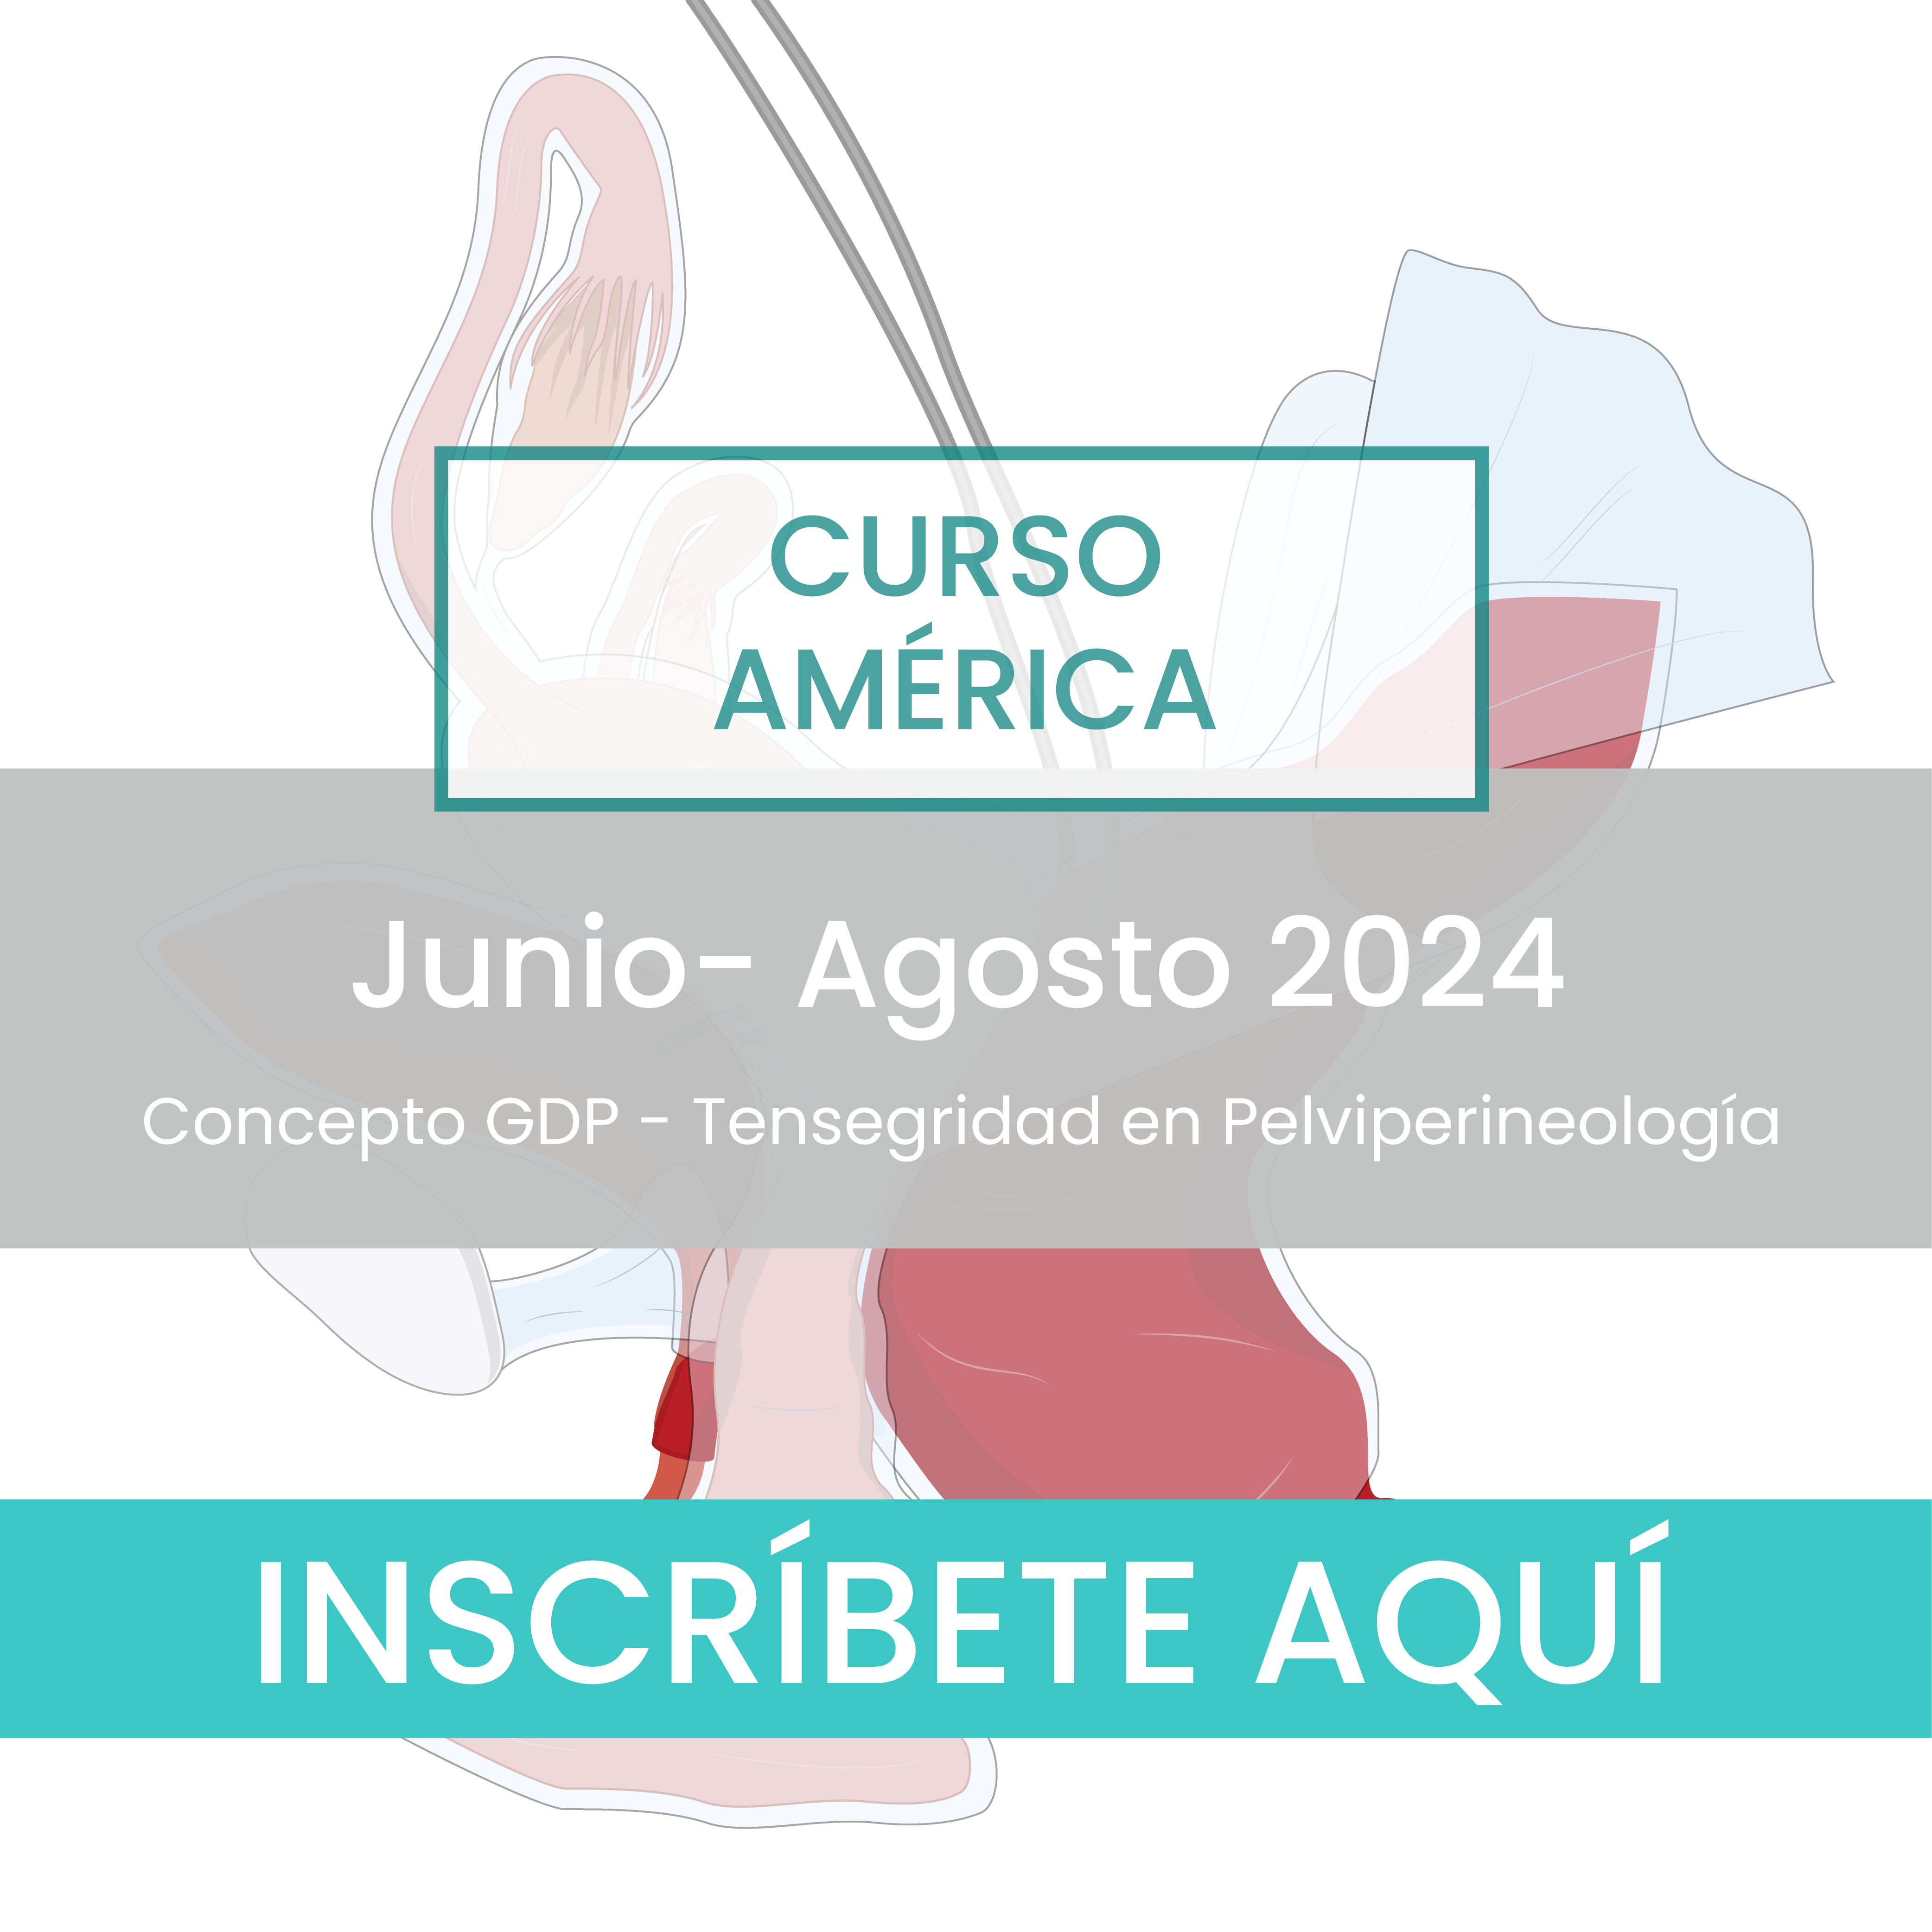 Curso semipresencial Internacional América: Tensegridad en Pelviperineología - Junio | Agosto 2024